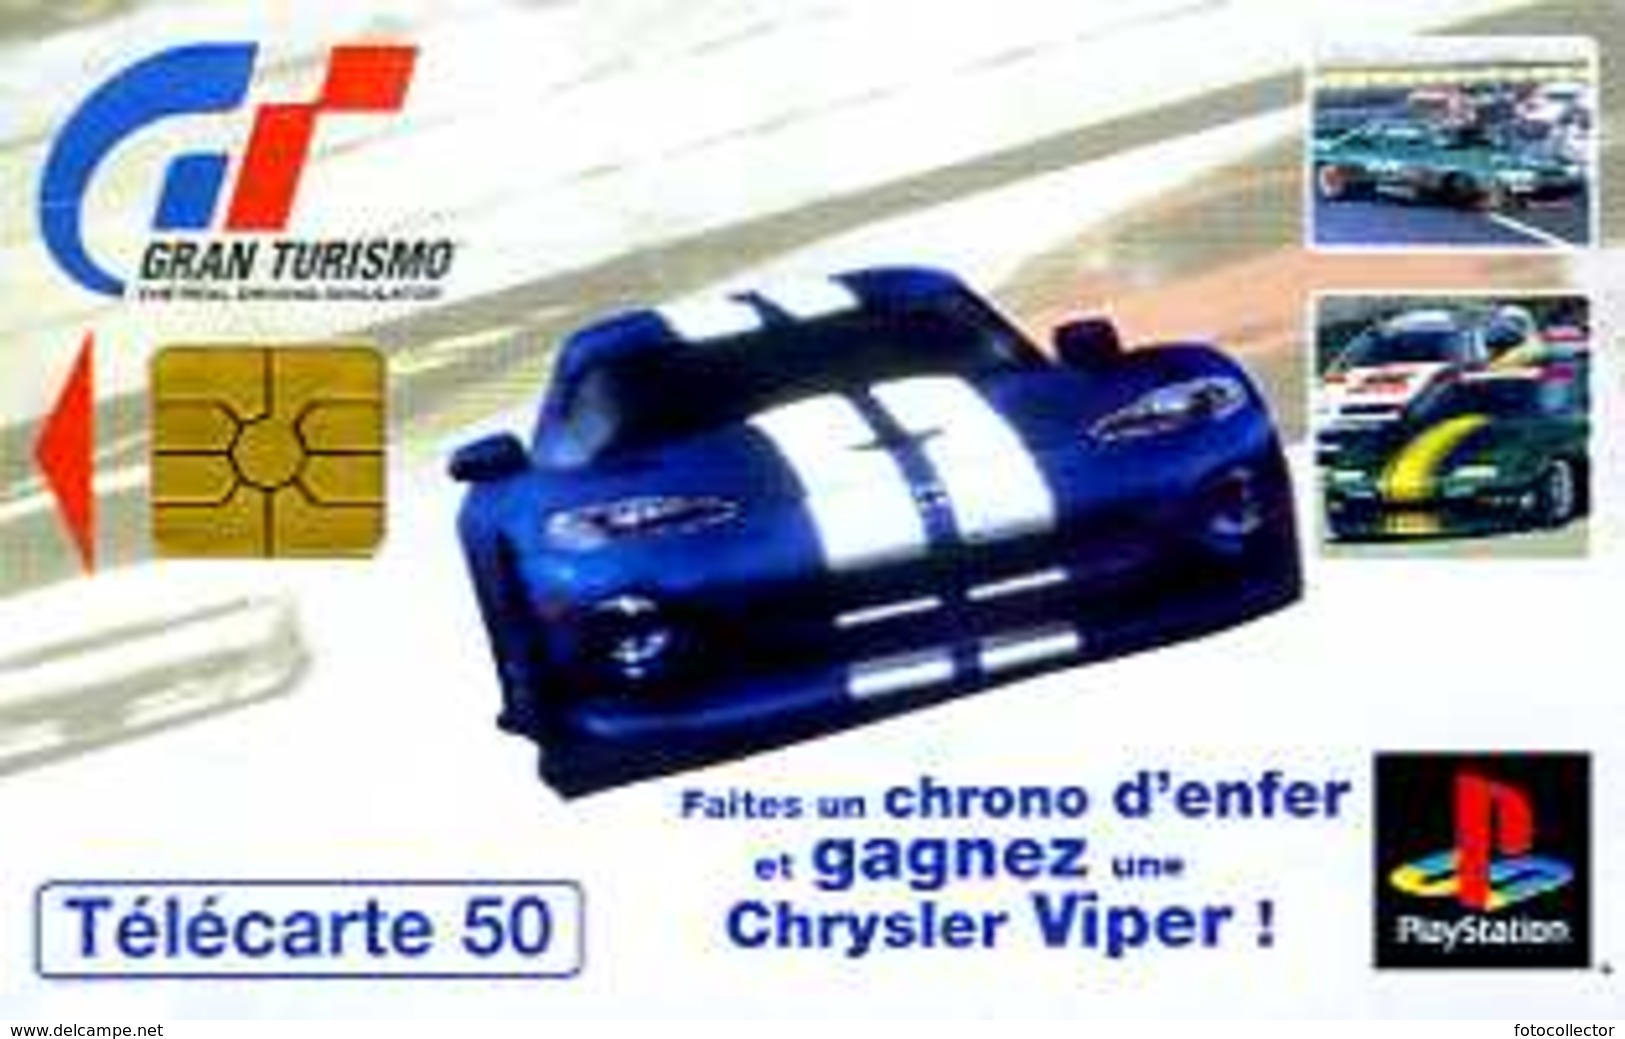 Télécarte 50 : Gran Turismo Playstation - Juegos